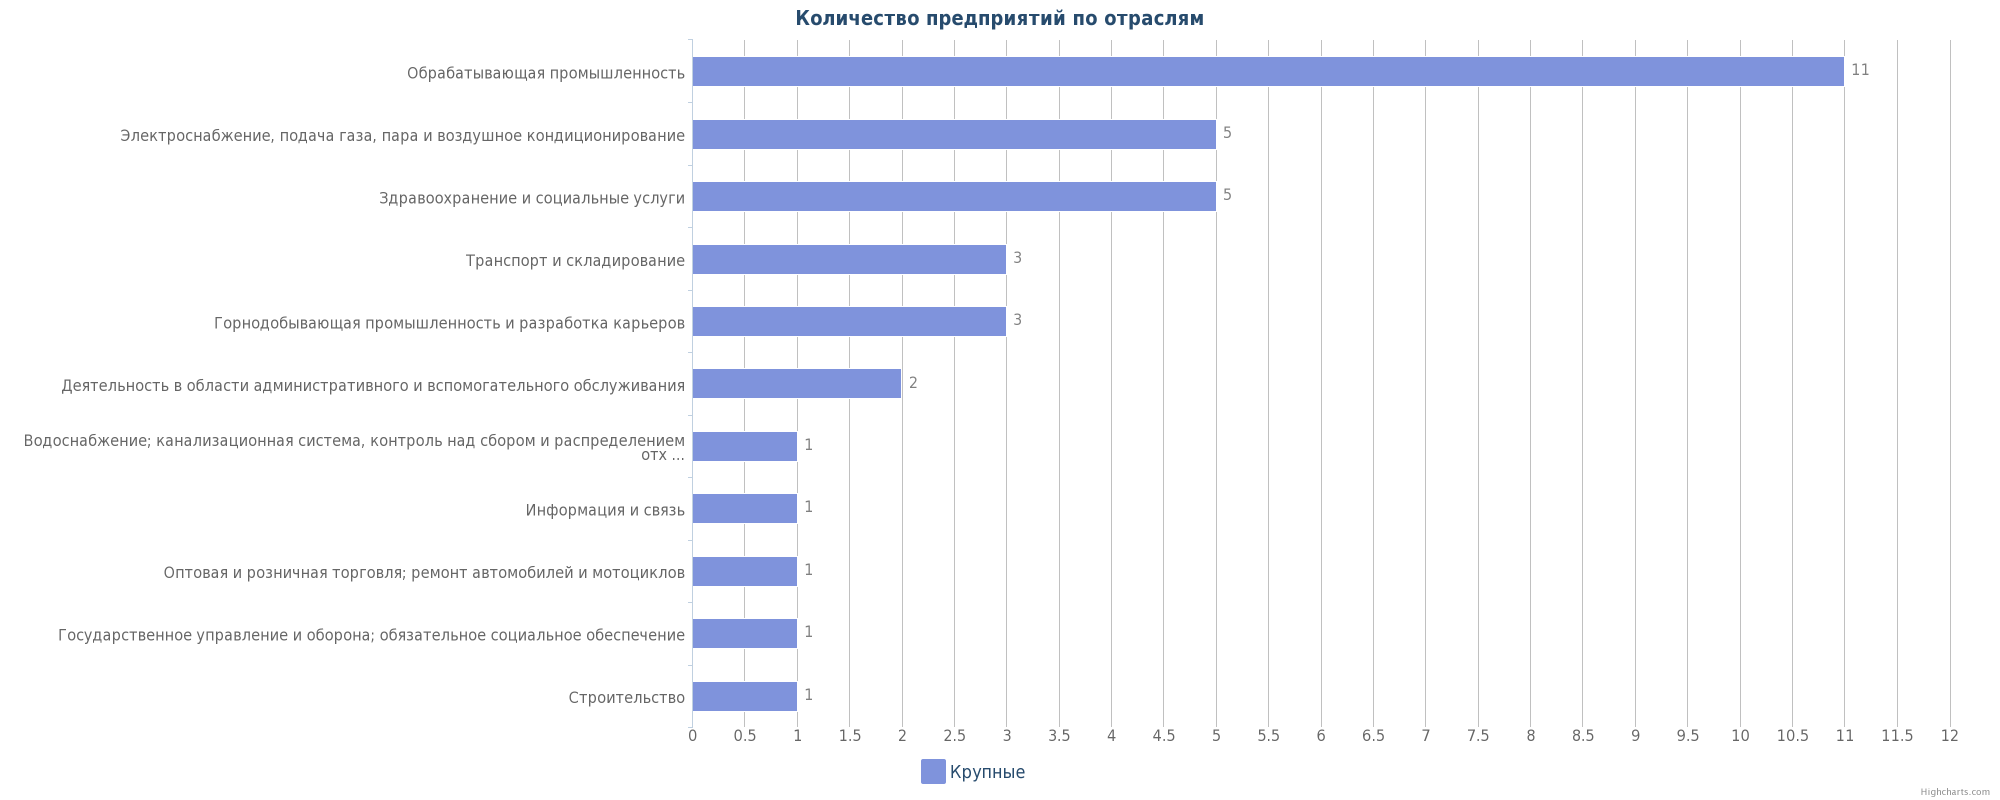 Крупные предприятия Казахстана по отраслям: Экибастуз